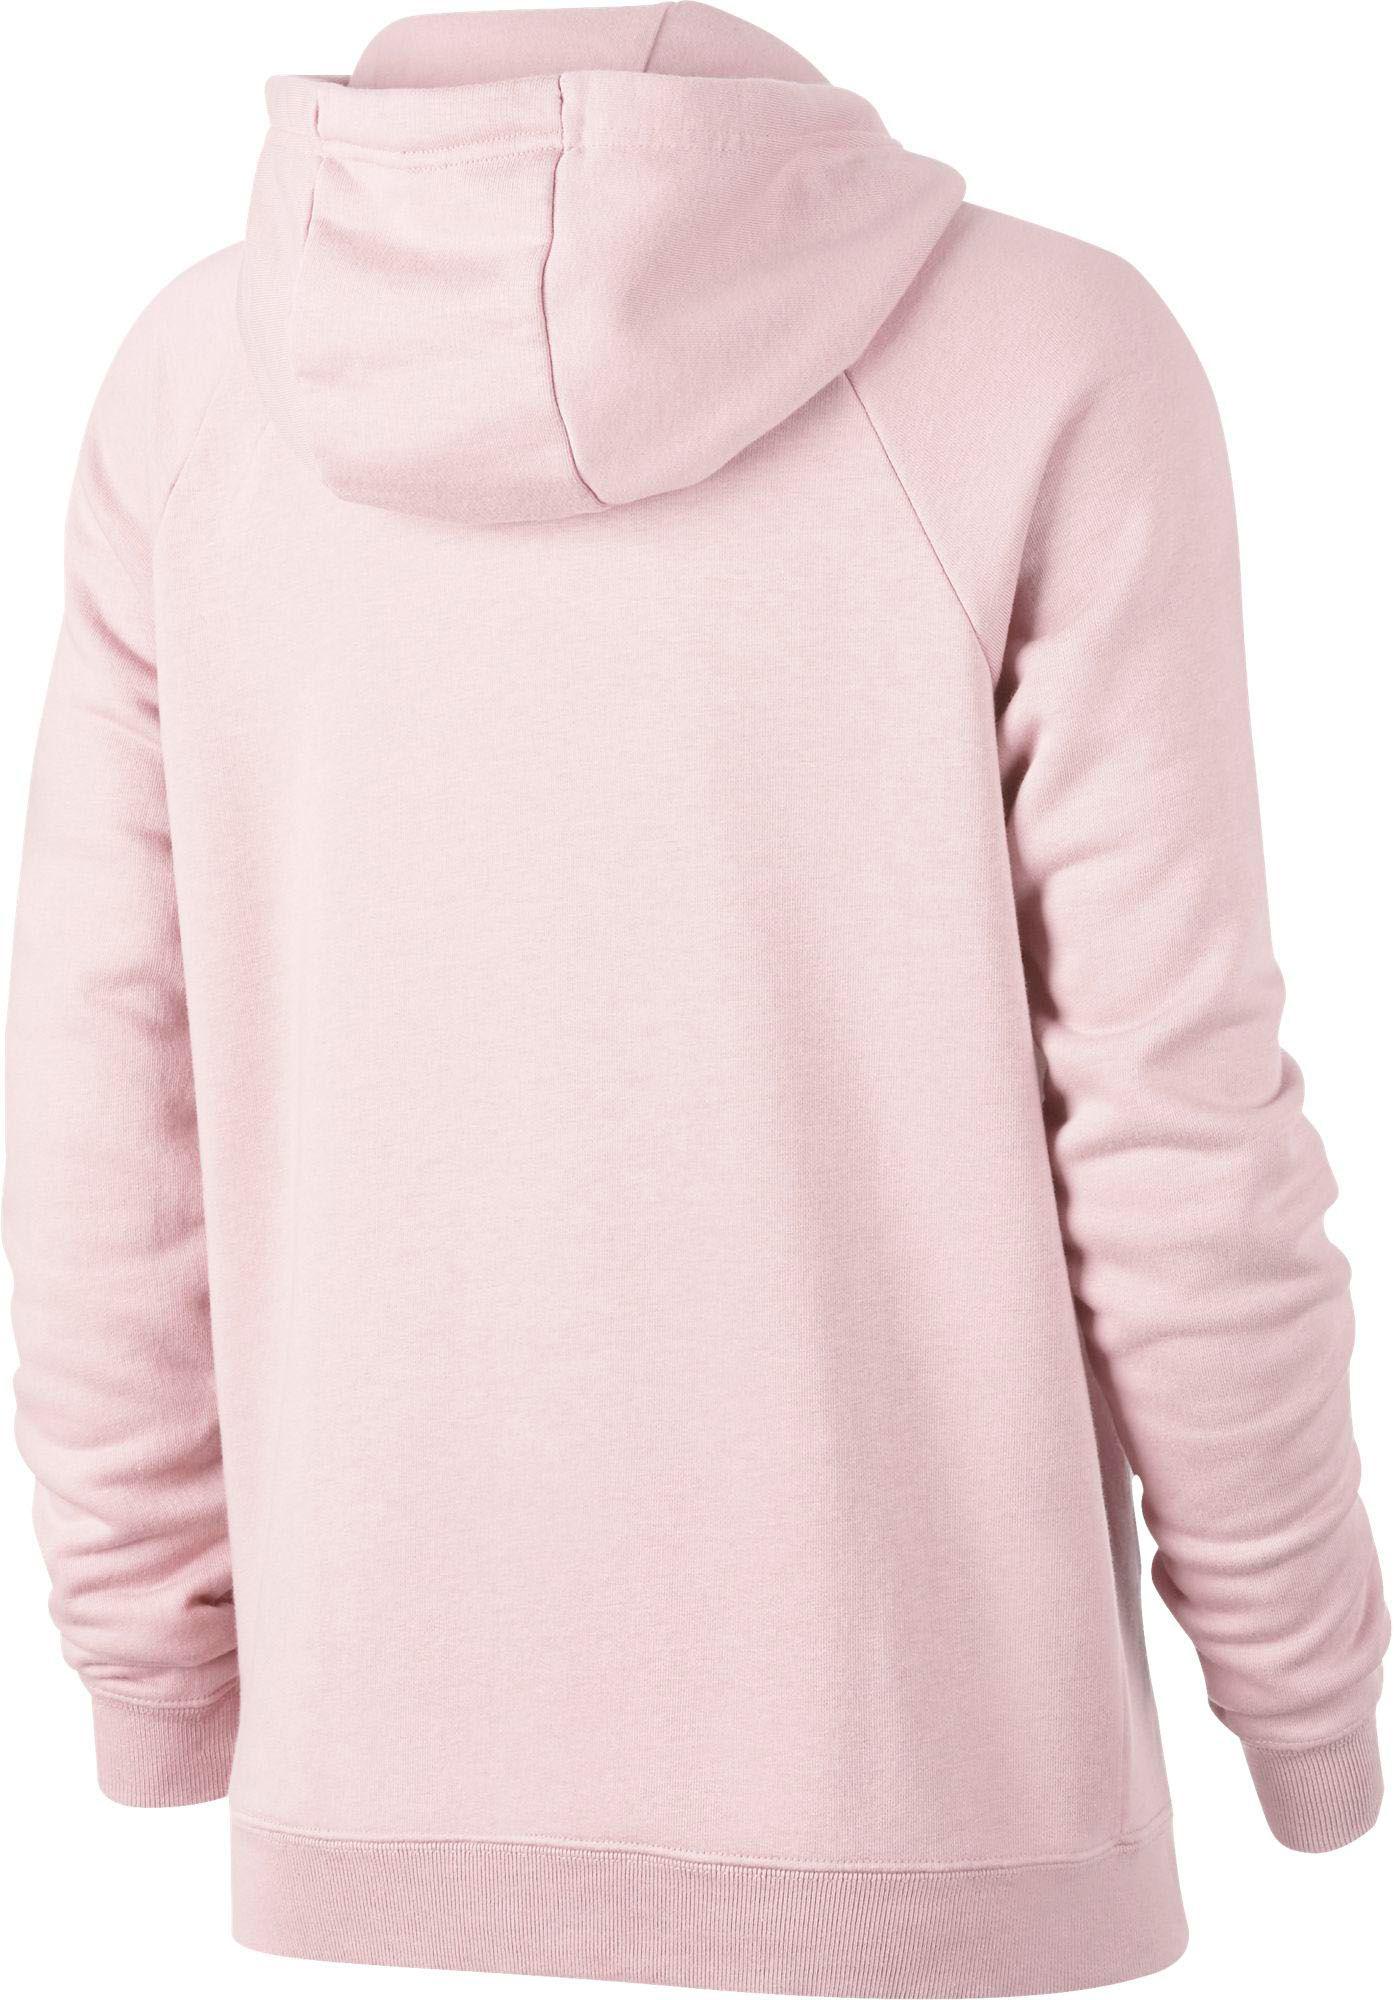 Nike Fleece Sportswear Rally Hoodie in Pearl Pink (Pink) - Lyst